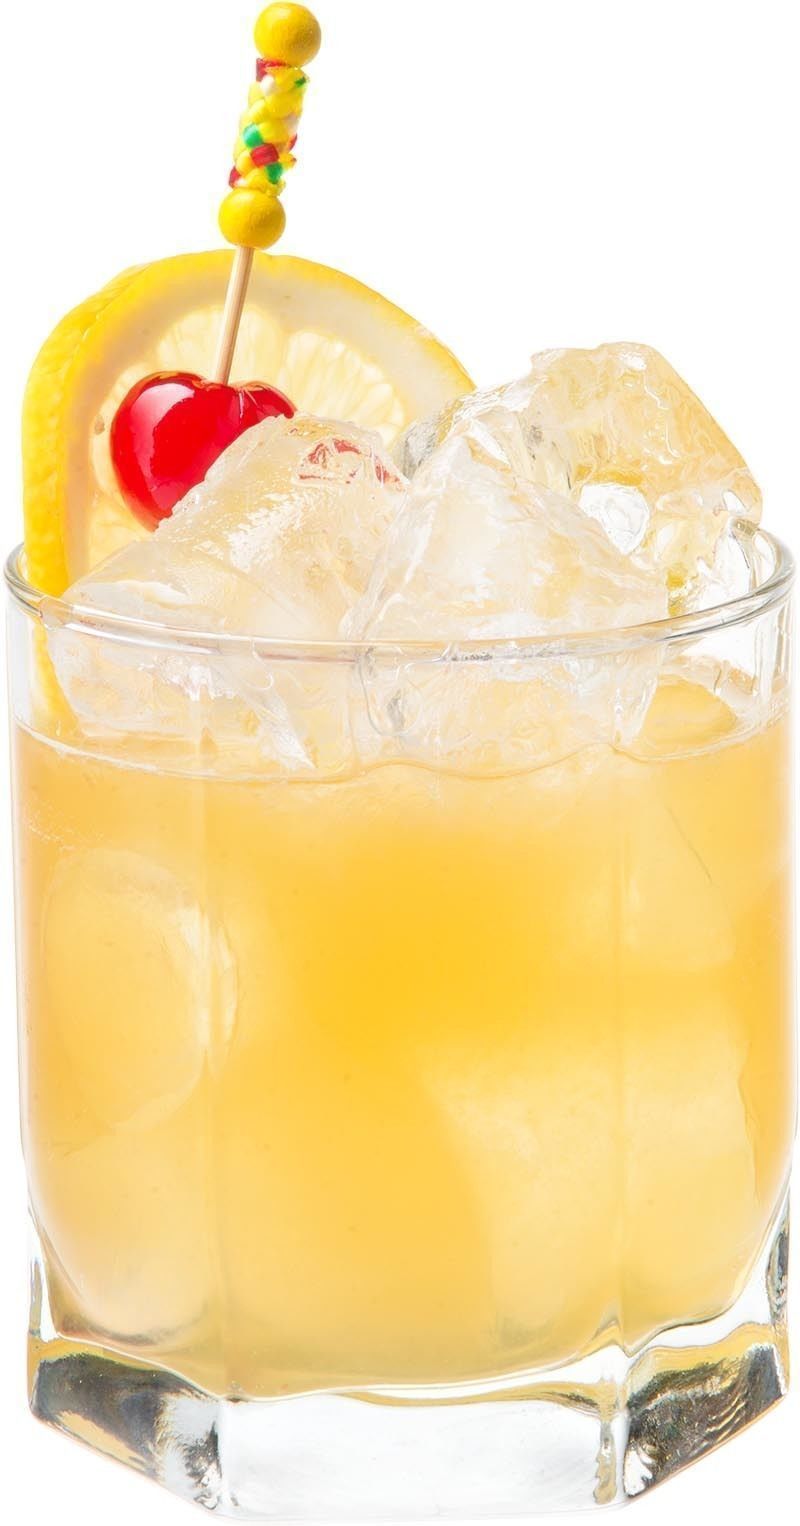 Comment préparer le cocktail Brandy sour